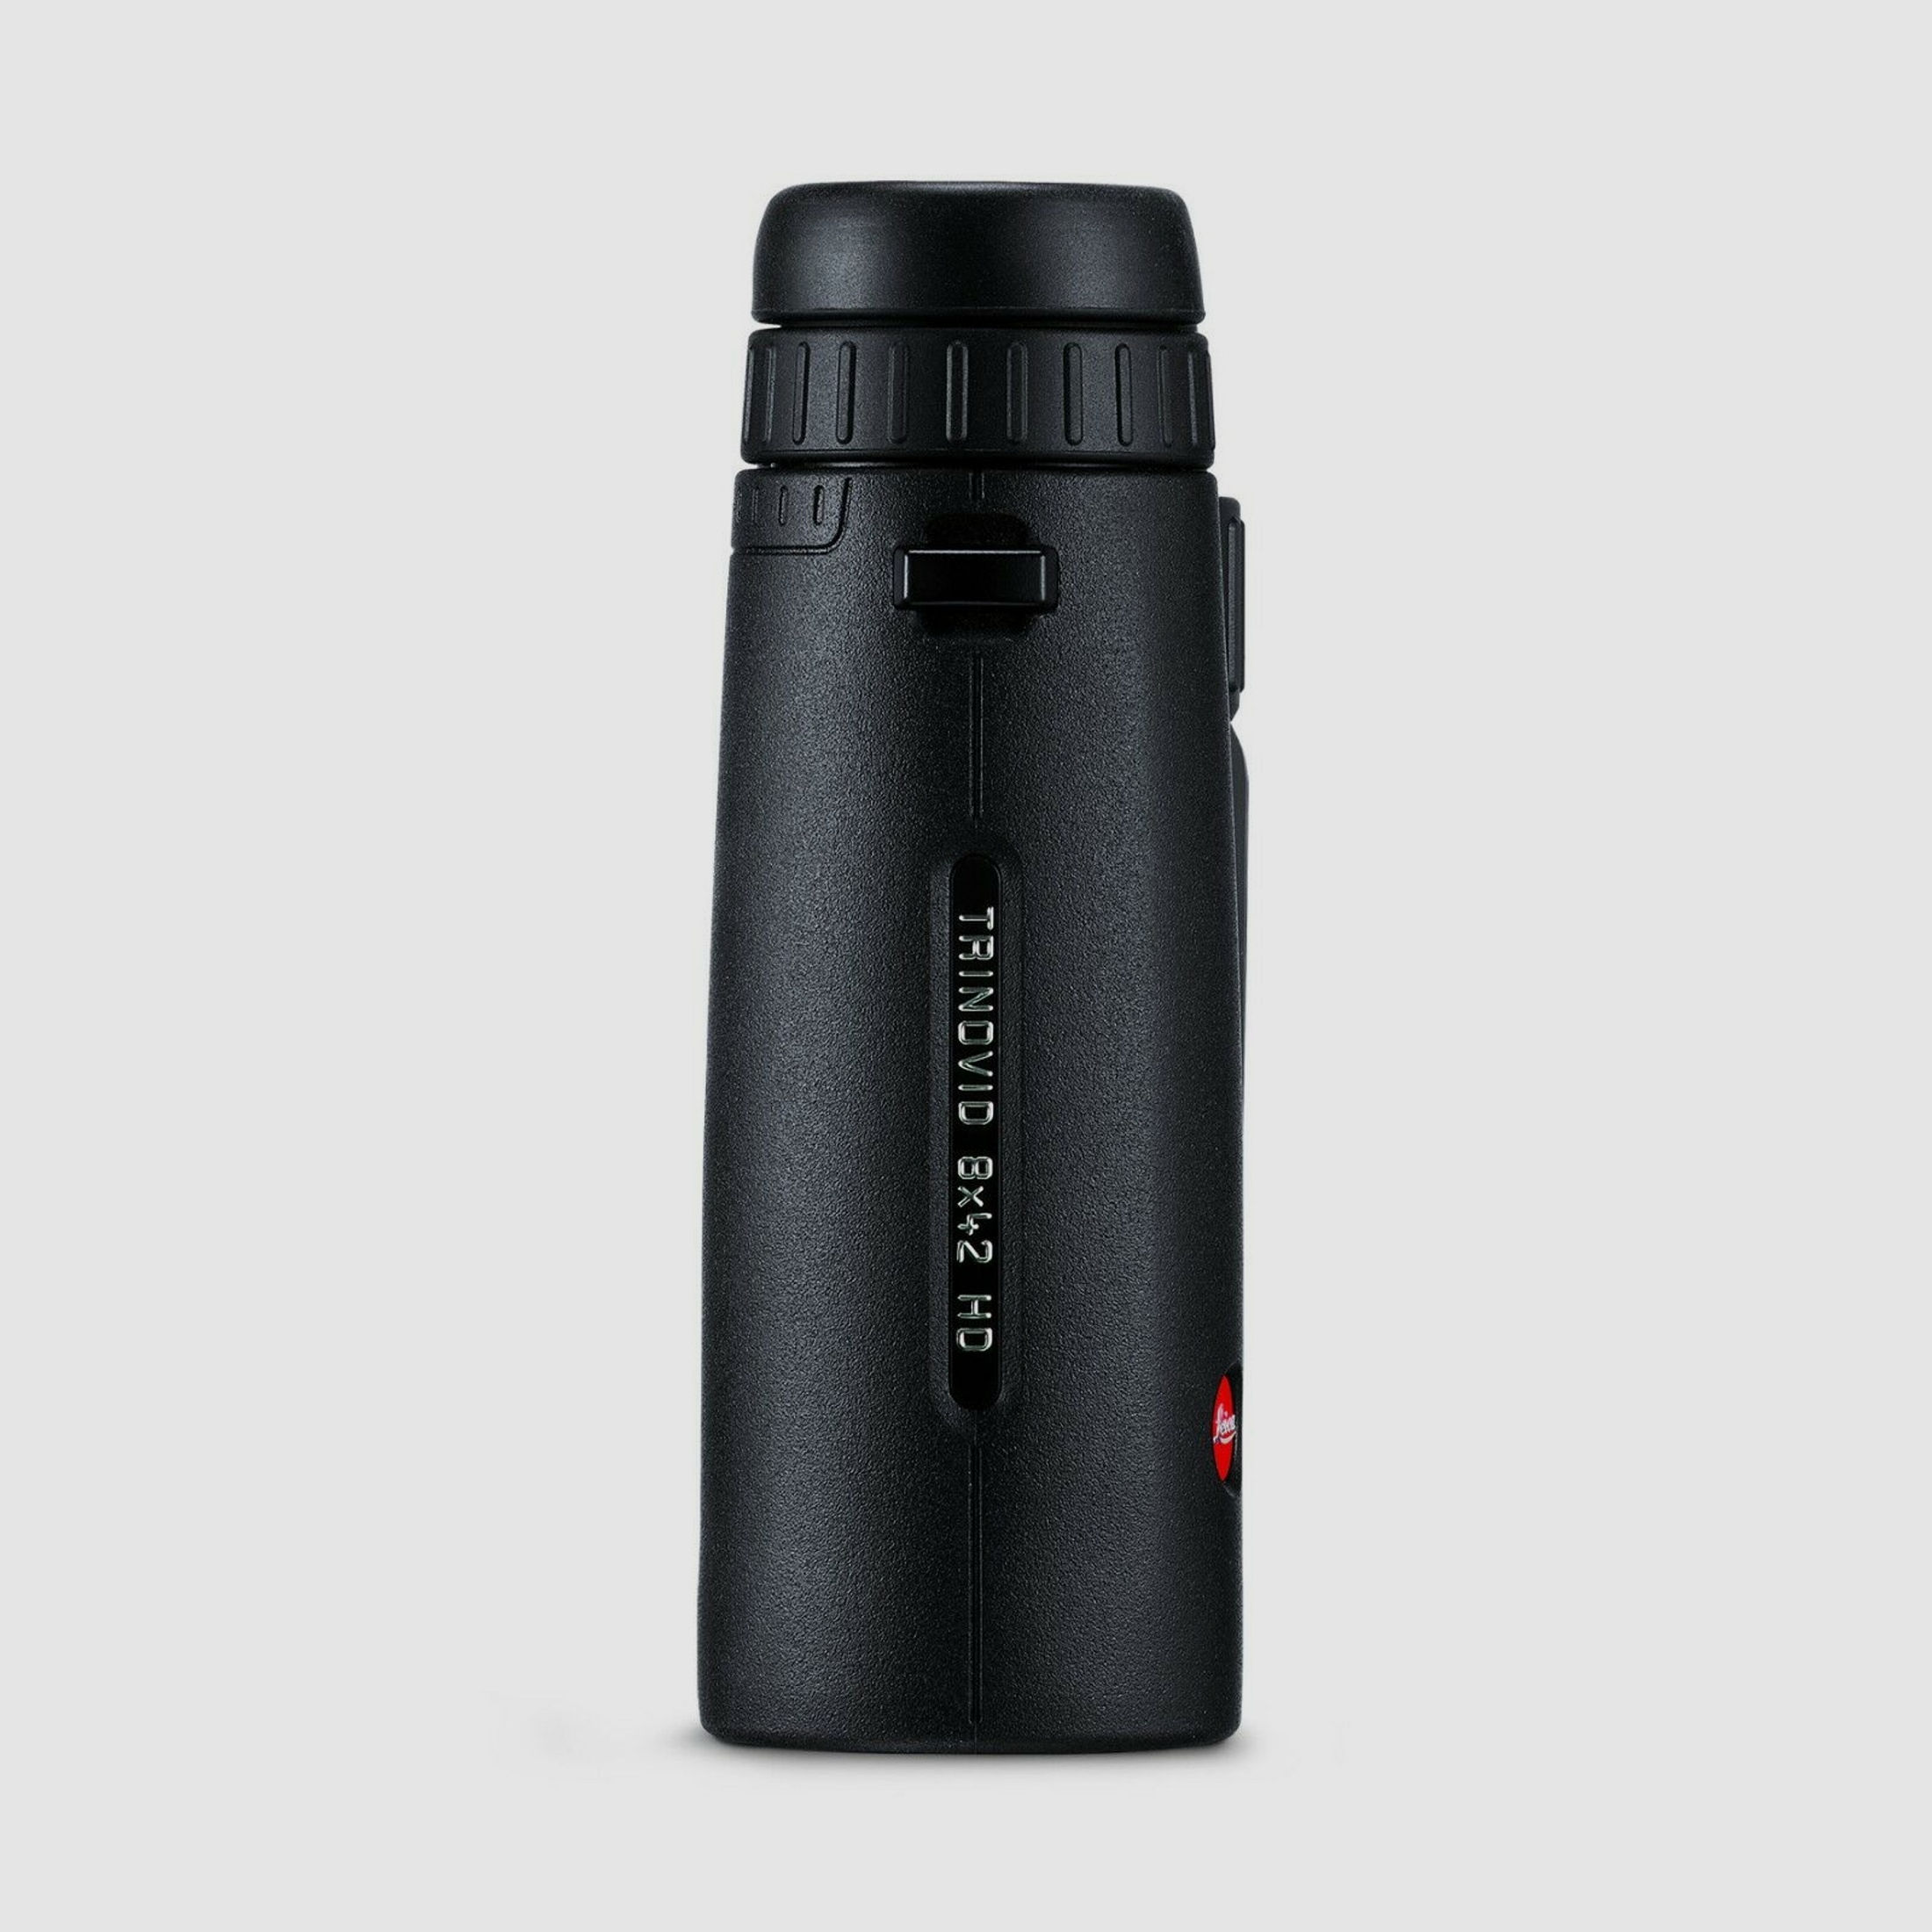 Leica Fernglas Trinovid 8x42 HD mit Tasche und Riemen Birdwatching